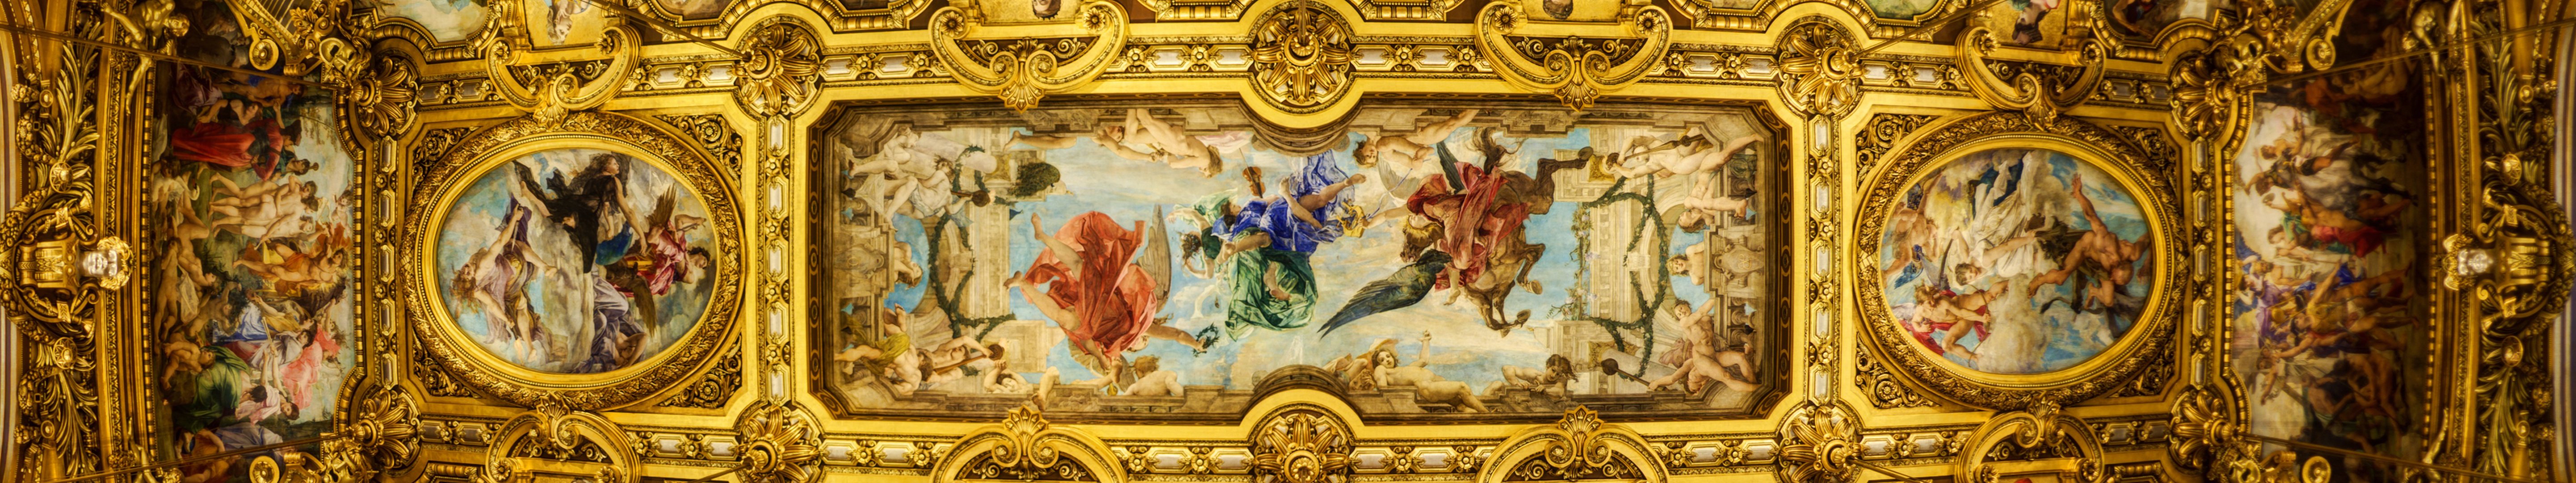 ceiling, Of, The, Grand, Foyer, Palais, Garnier, Wallpaper Wallpaper